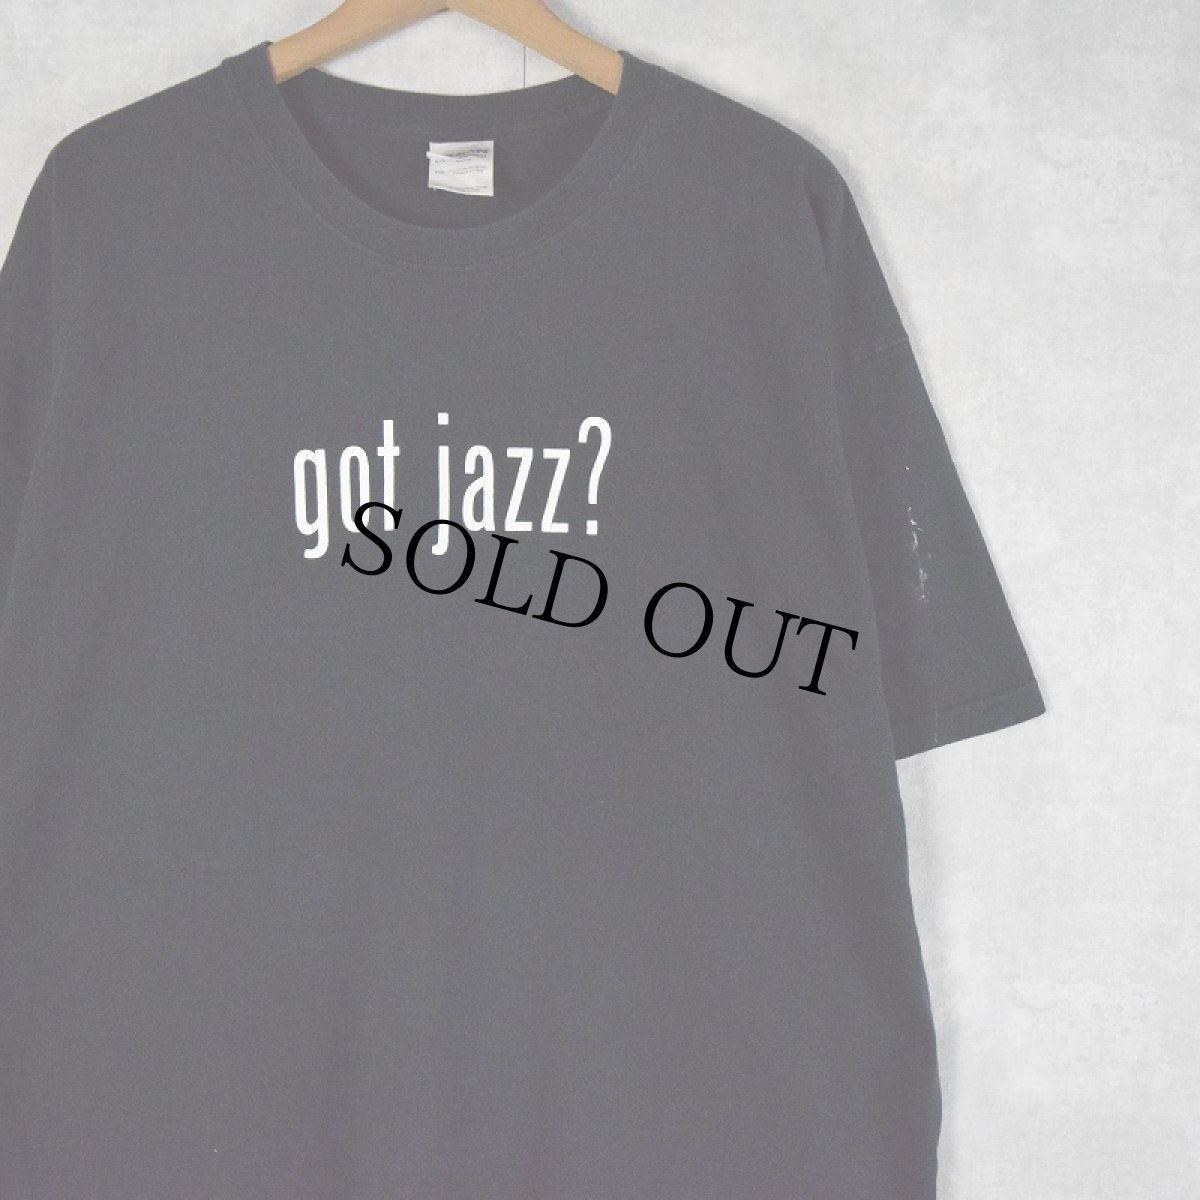 画像1: 2000's KCCK-FM jazz 88.3 "got jazz" パロディプリント ラジオ局Tシャツ XL (1)